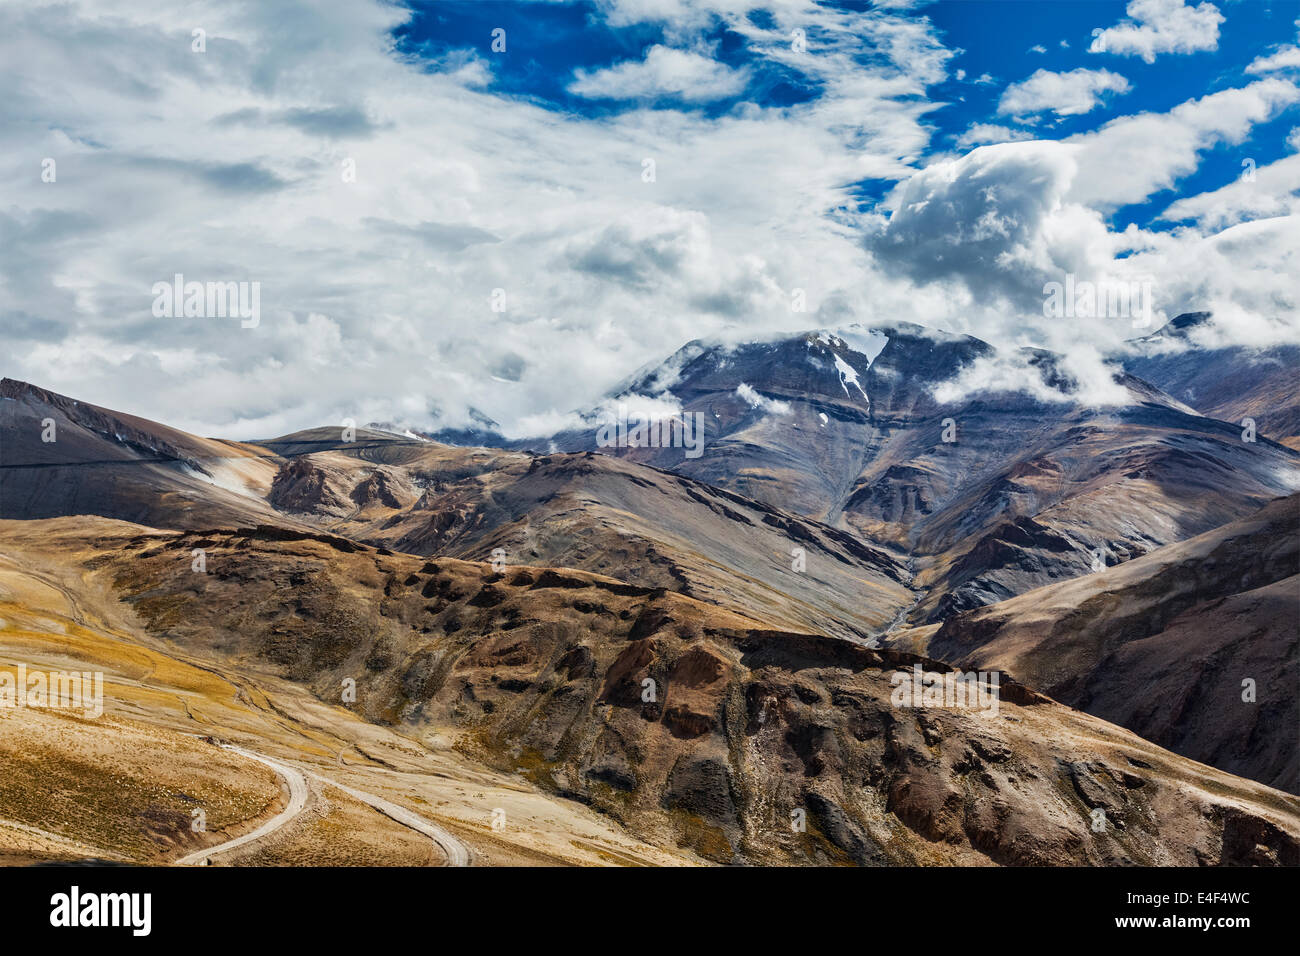 Himalayan landscape near Tanglang-La pass. Ladakh, India Stock Photo